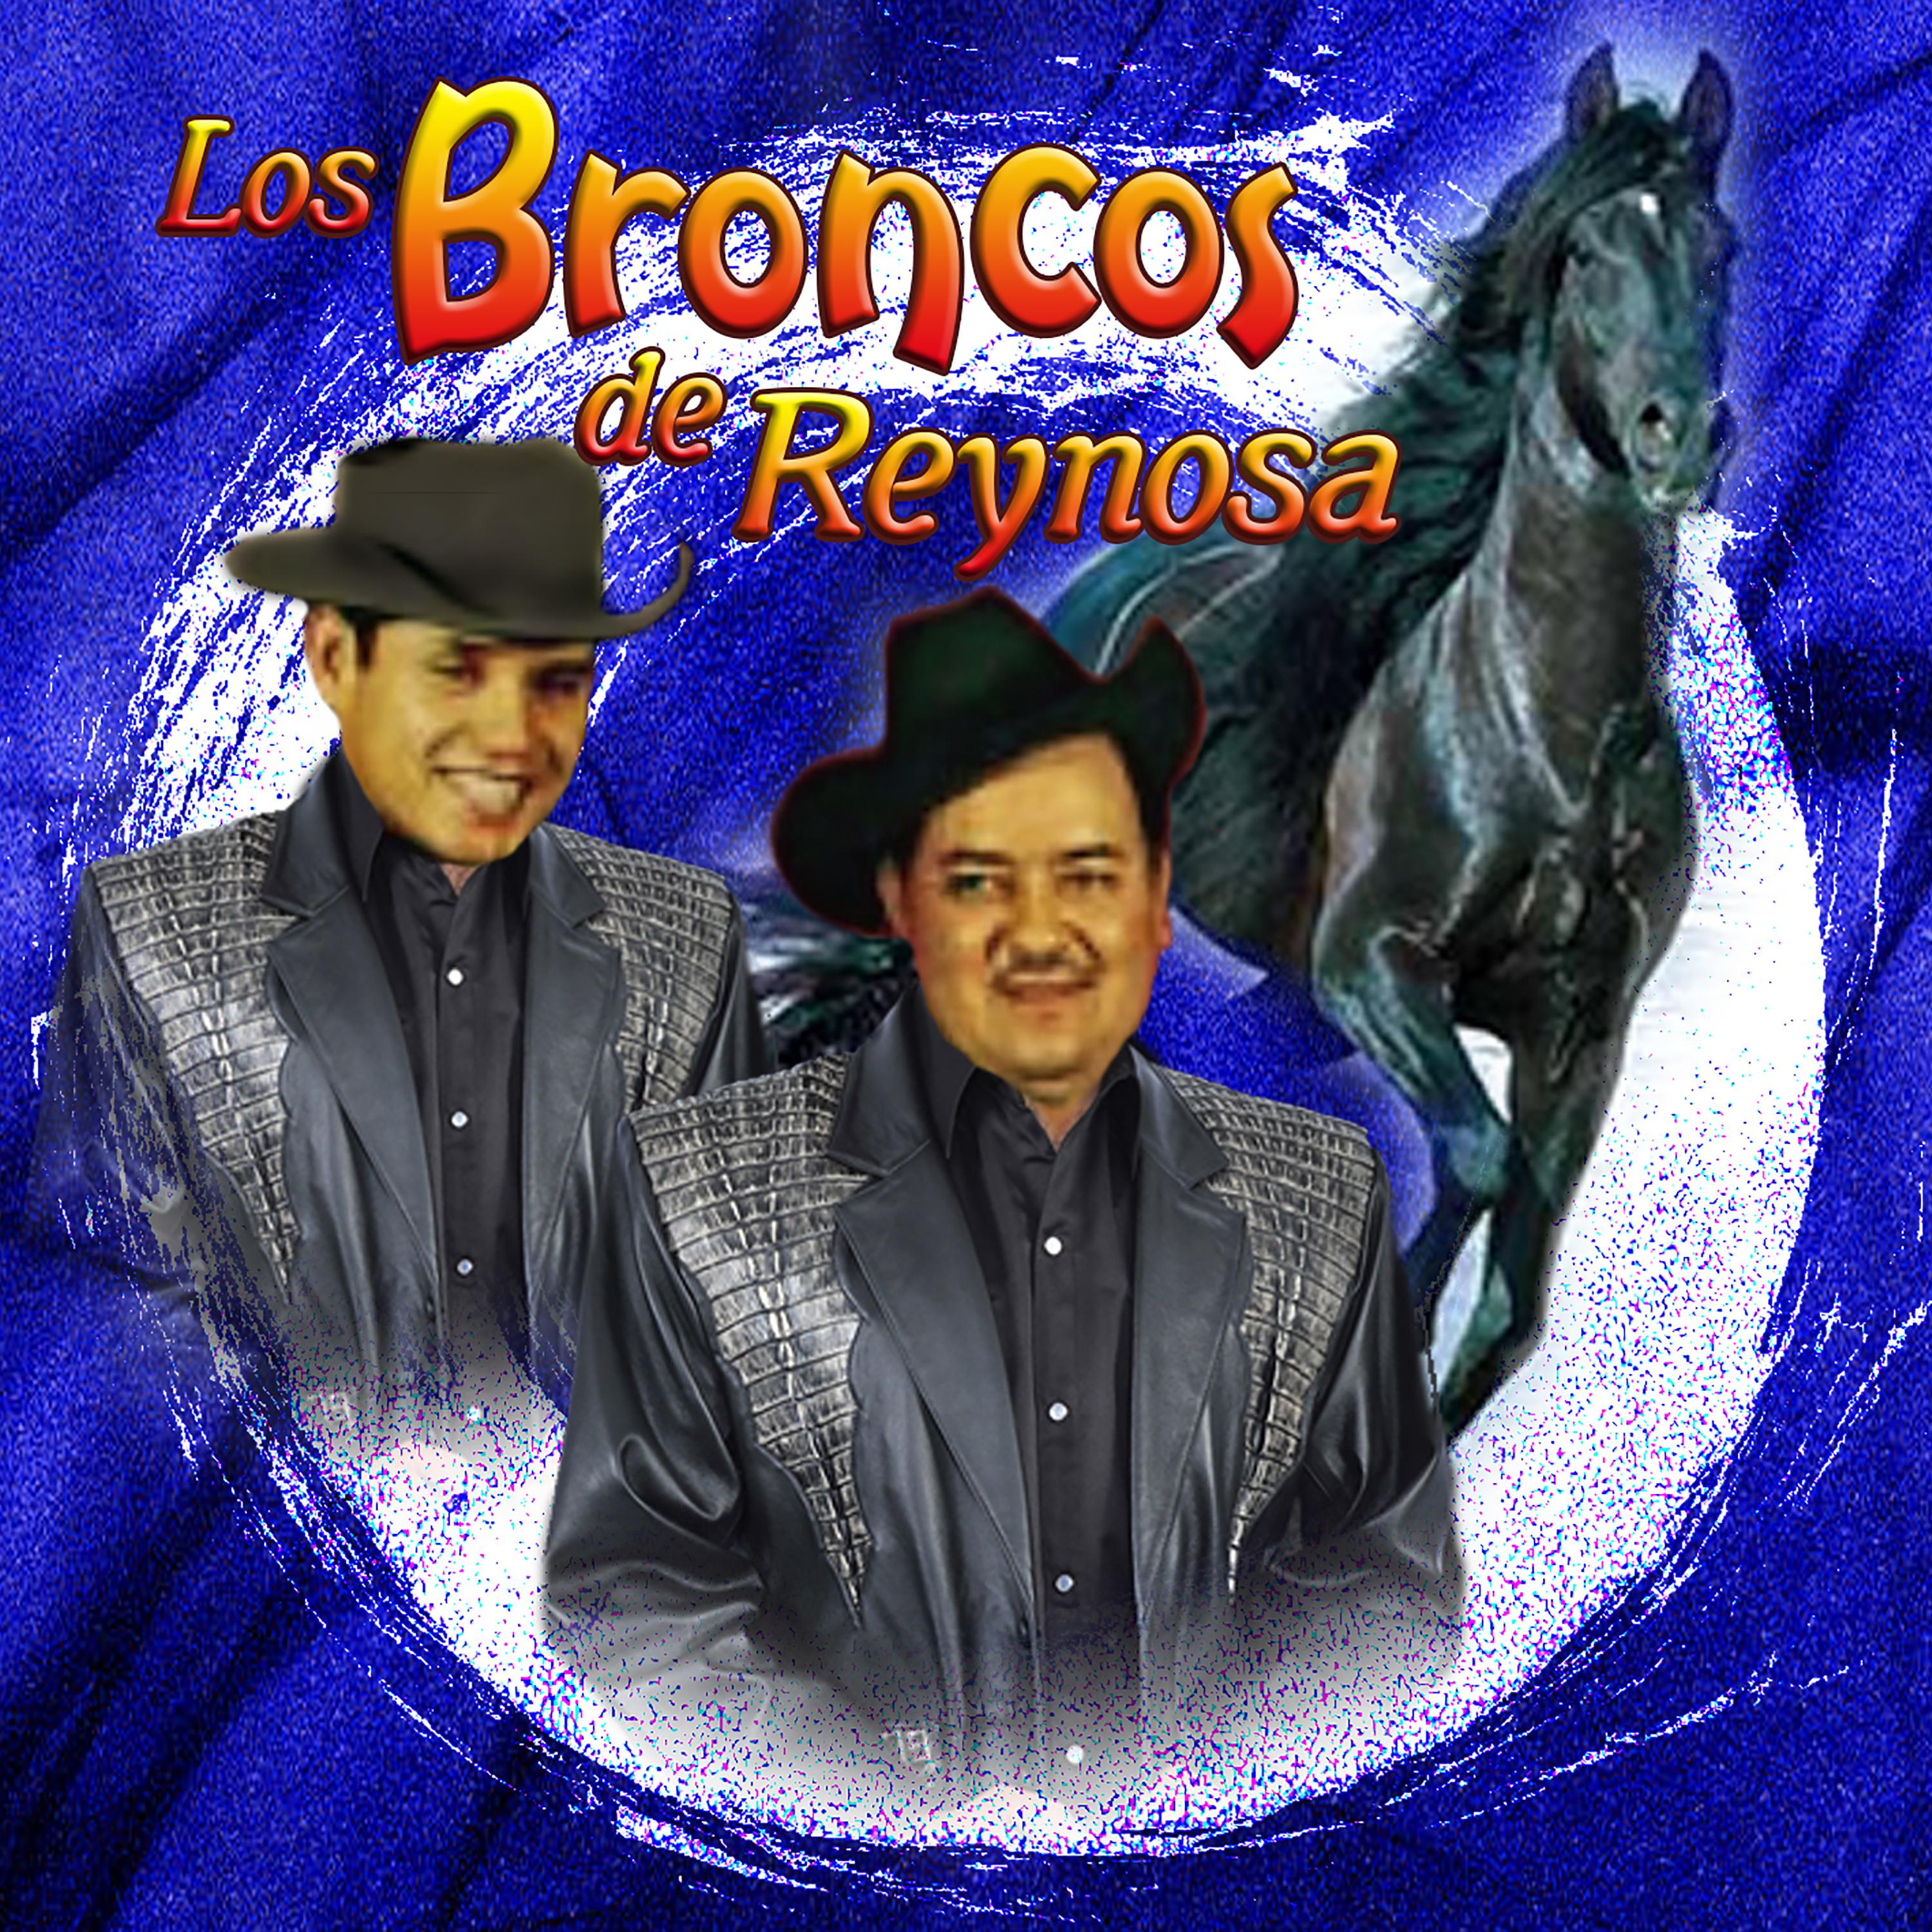 Los Broncos de Reynosa